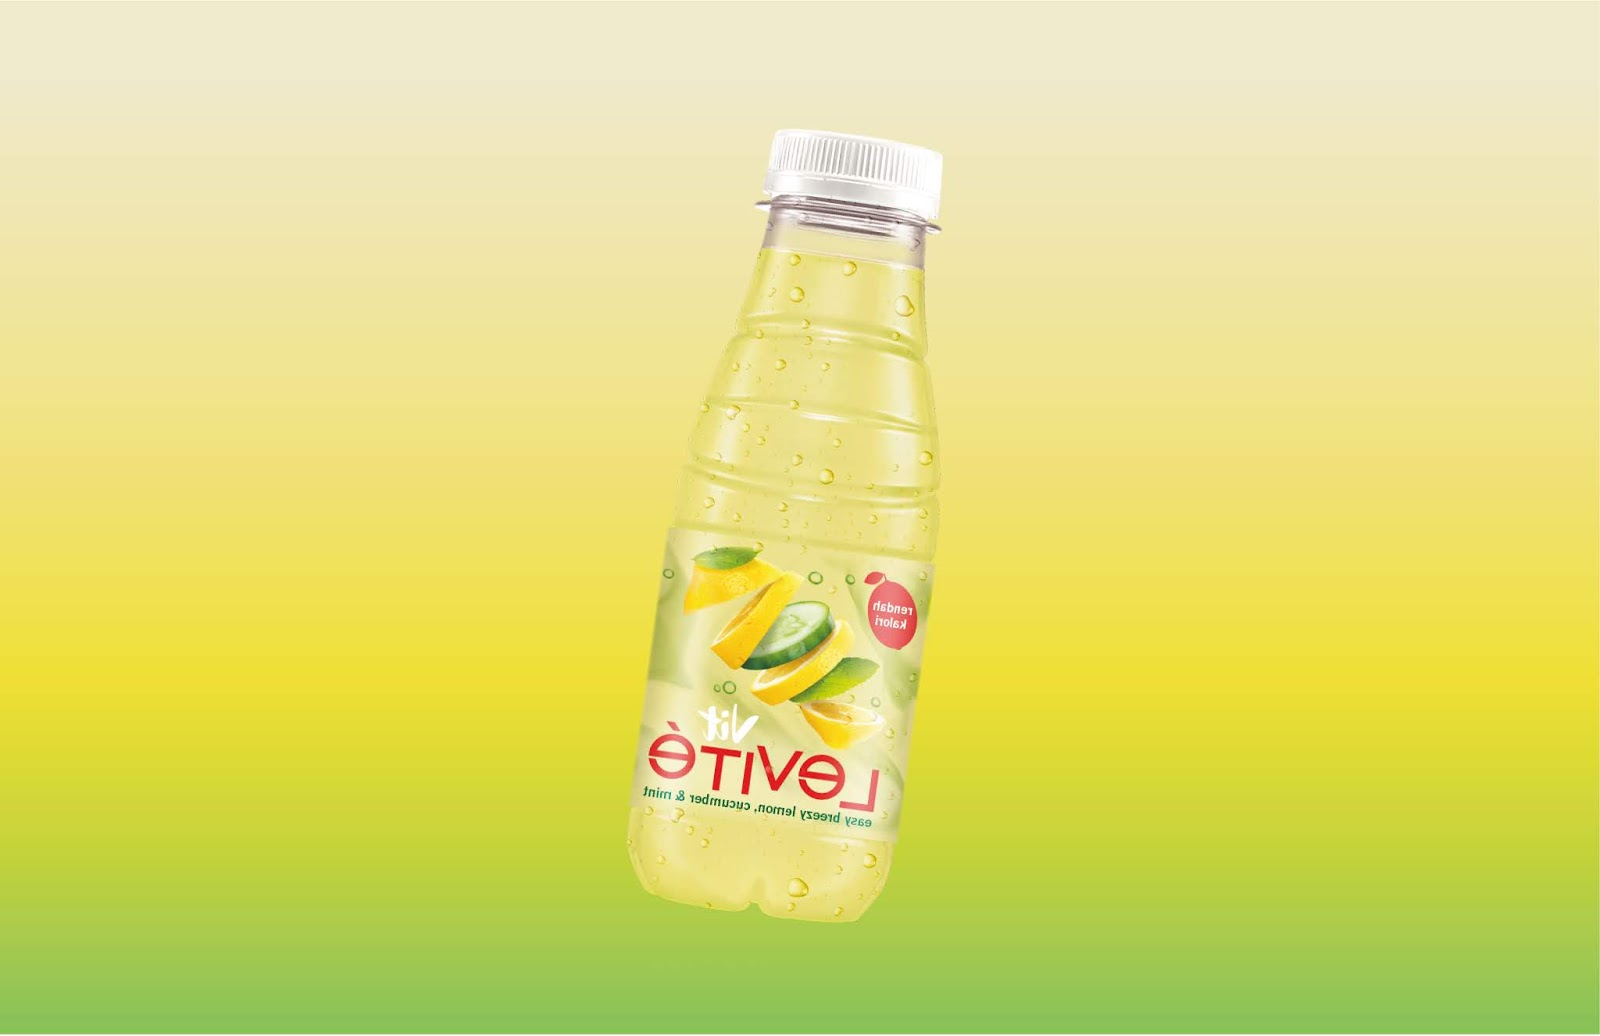 果汁包装设计常常用水果本身照片或插画表达(图1)